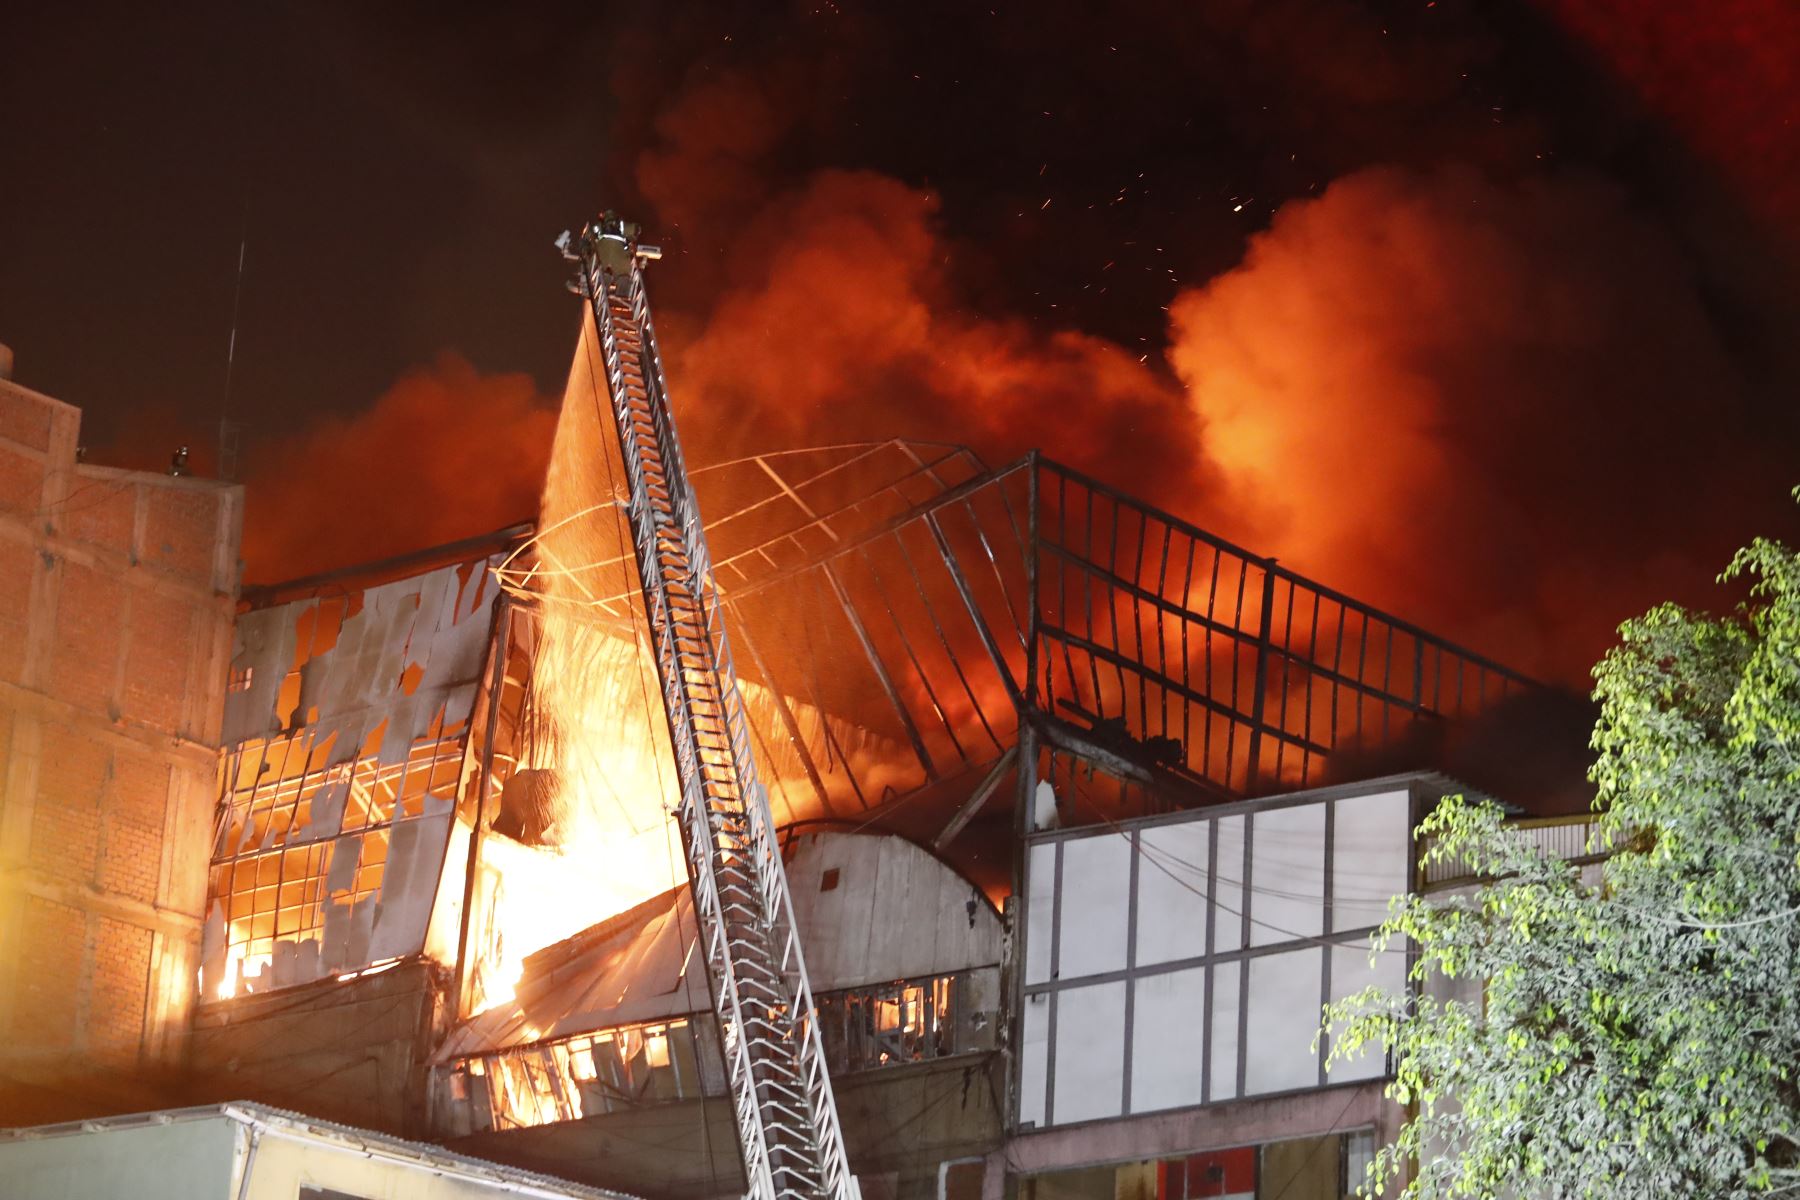 Un incendio de grandes proporciones se registra en la parte alta de un edificio ubicado en la cuadra 11 del jirón Andahuaylas, cruce con jirón Puno, en el conglomerado Mesa Redonda. Foto: ANDINA/Renato Pajuelo